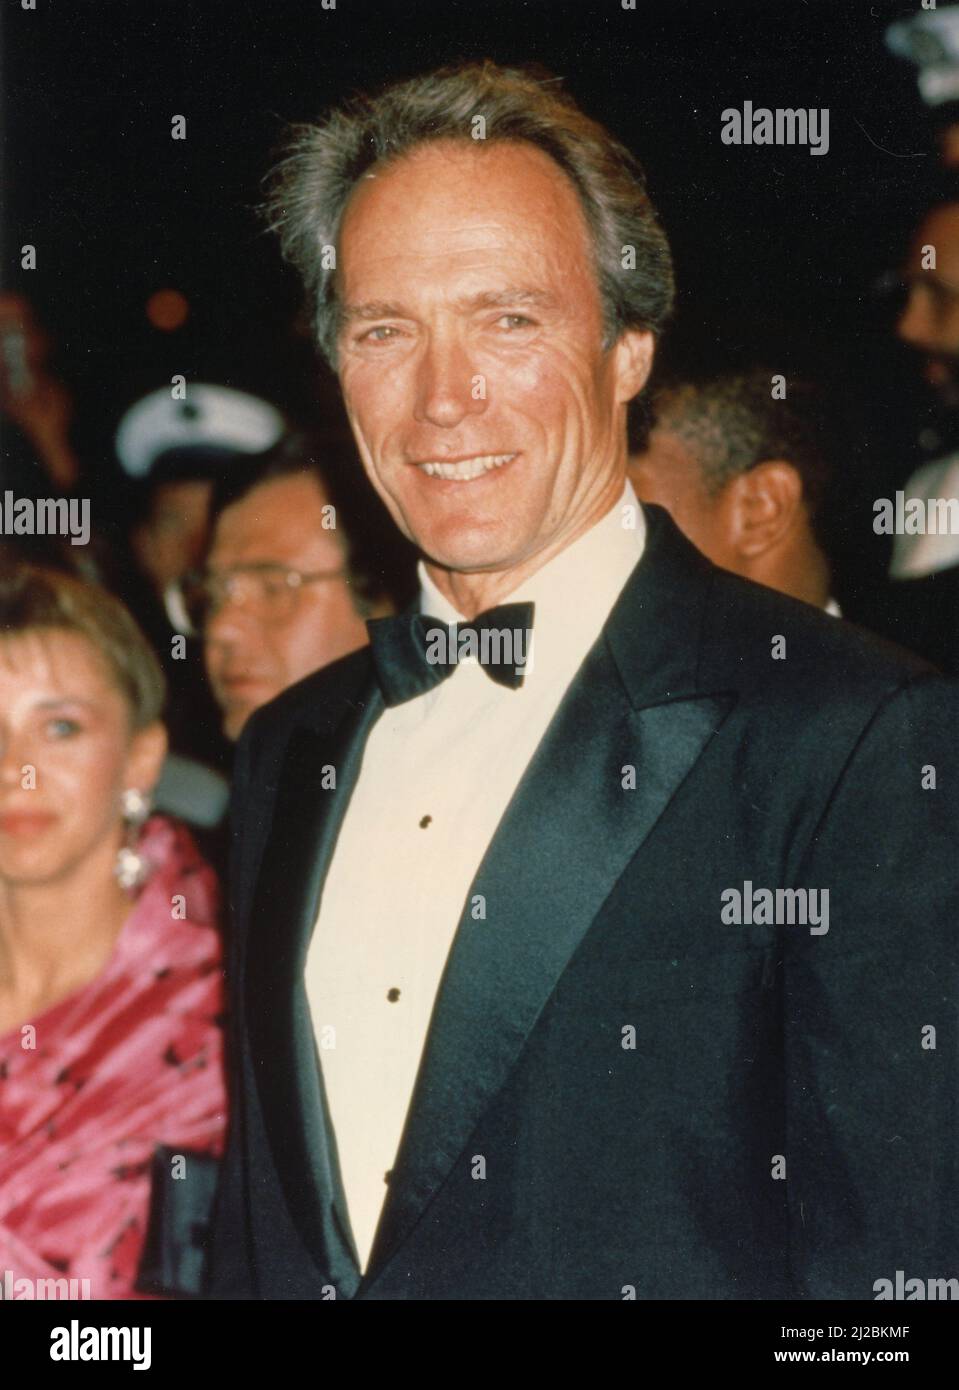 L'acteur et réalisateur américain Clint Eastwood remporte le prix Academy Award pour le meilleur réalisateur et la meilleure image pour le film Unforfunfunder, USA 1993 Banque D'Images